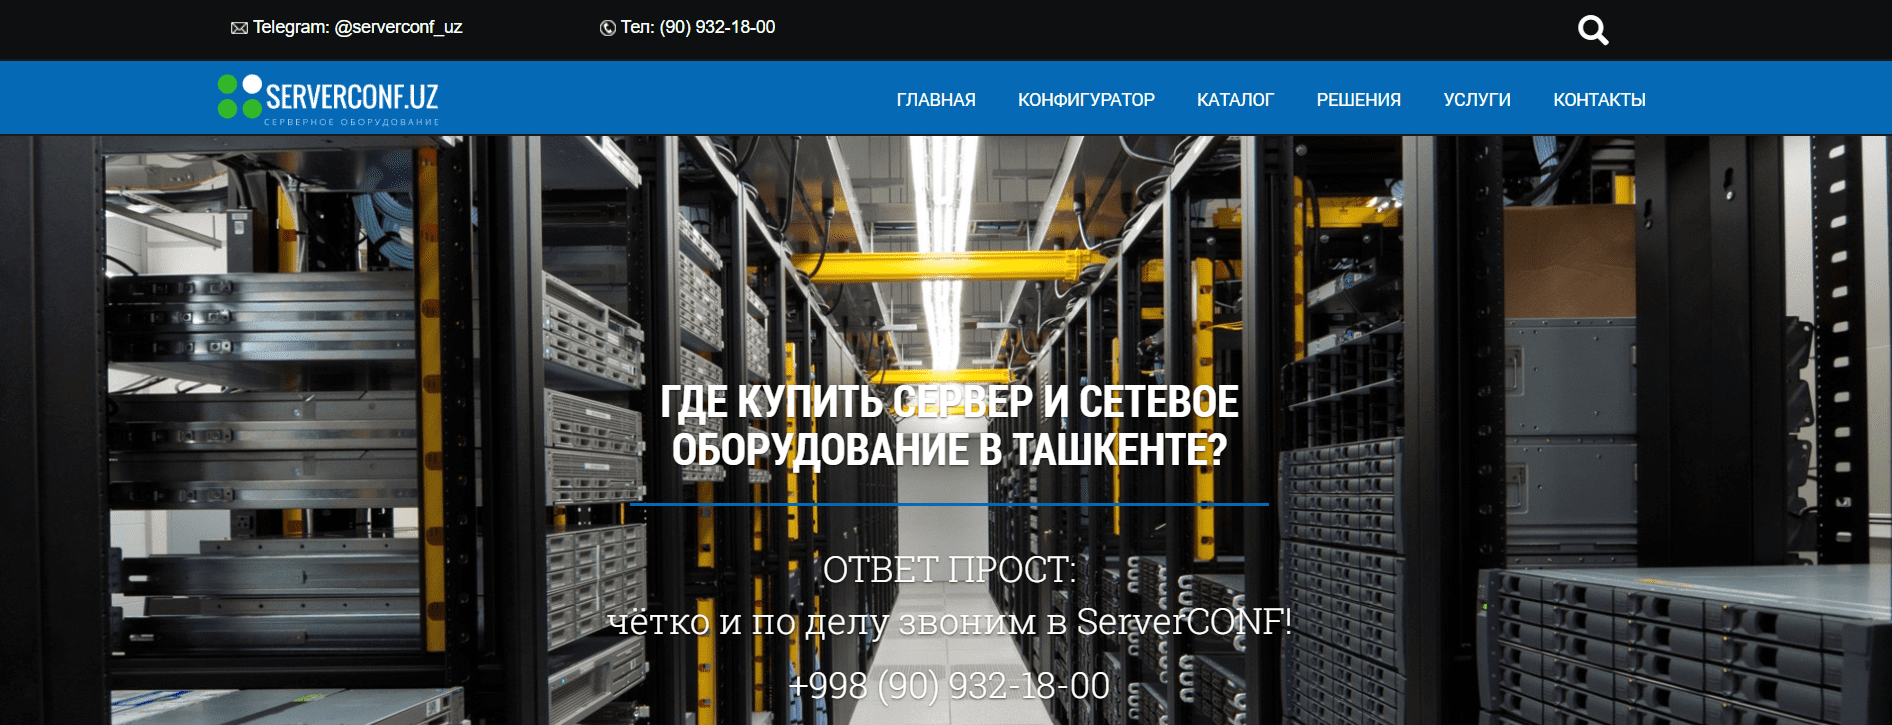 Serverconf.uz - официальный сайт